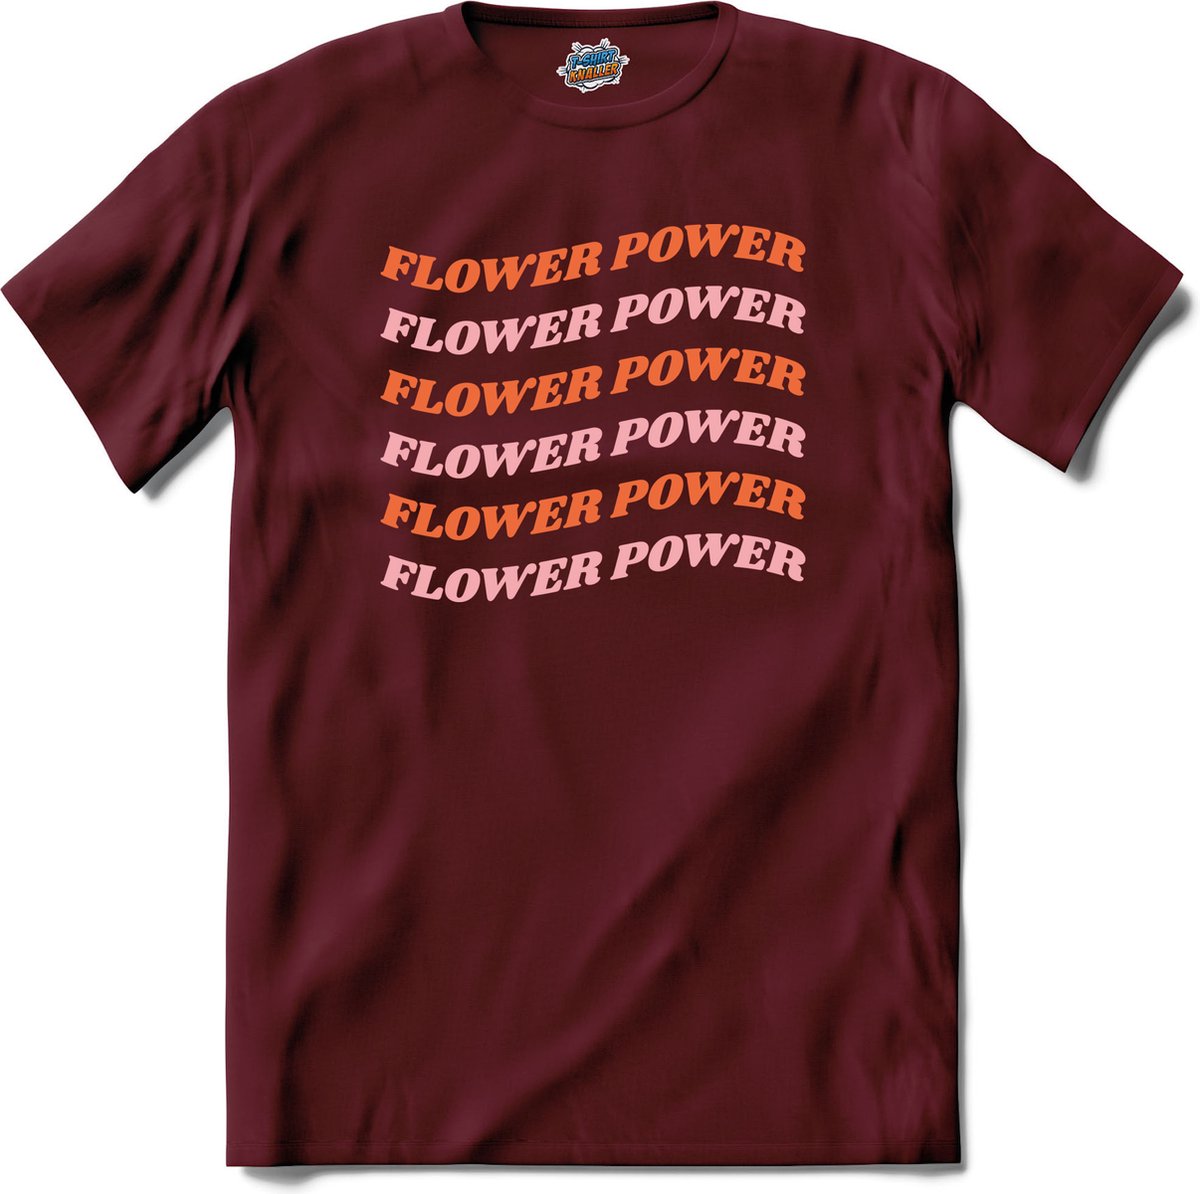 Flower power - T-Shirt - Dames - Burgundy - Maat S